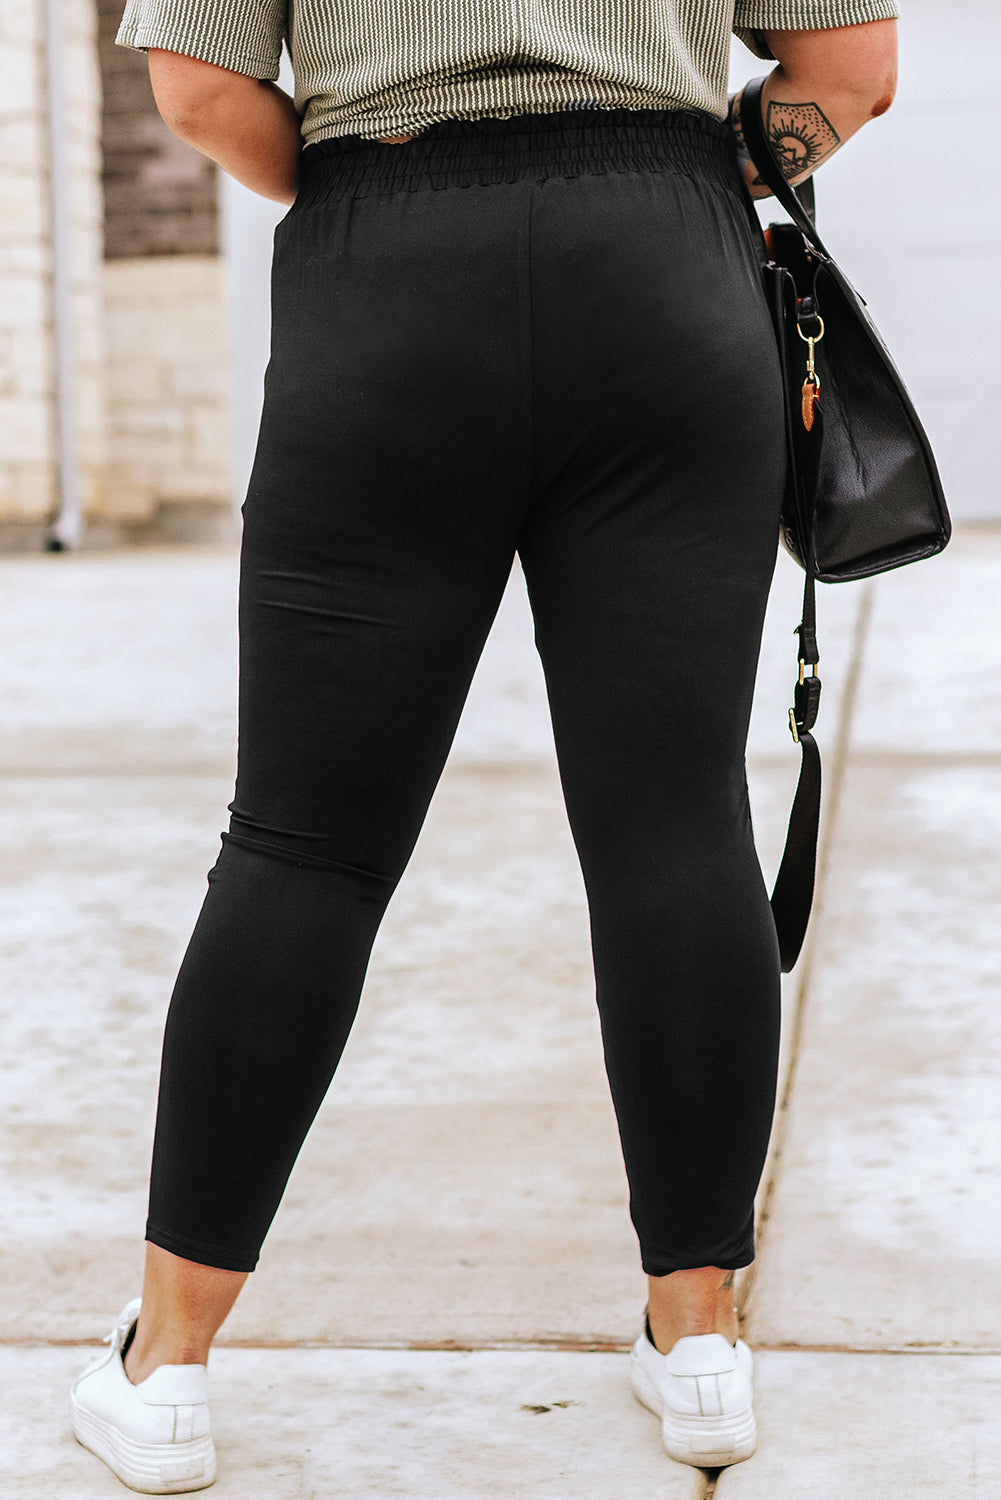 Črne mehke hlače z žepi z visokim pasom in volančki velike velikosti